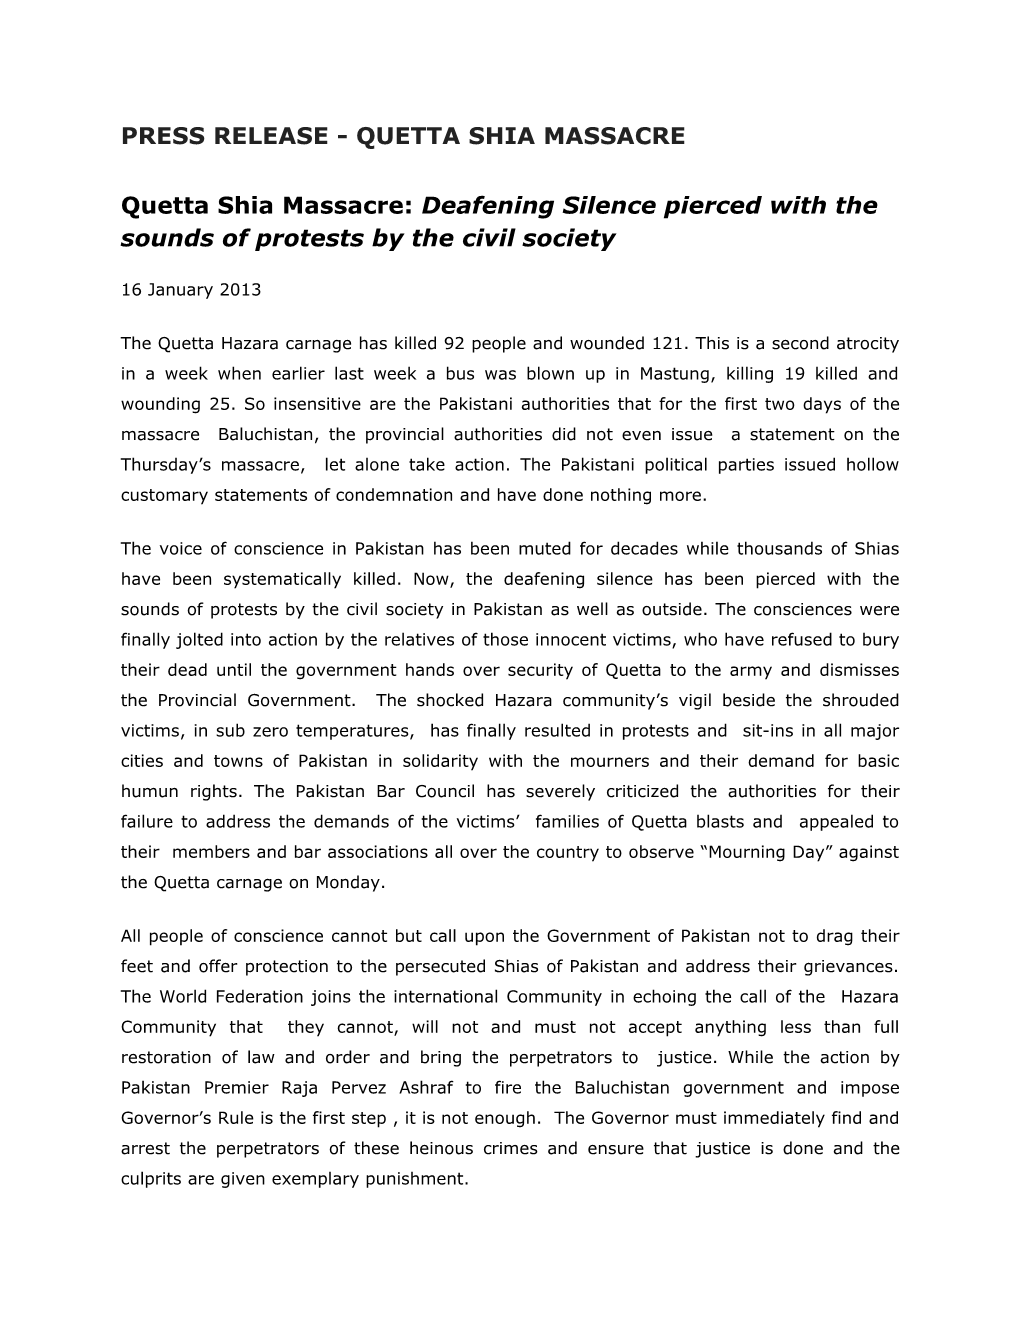 Press Release - Quetta Shia Massacre